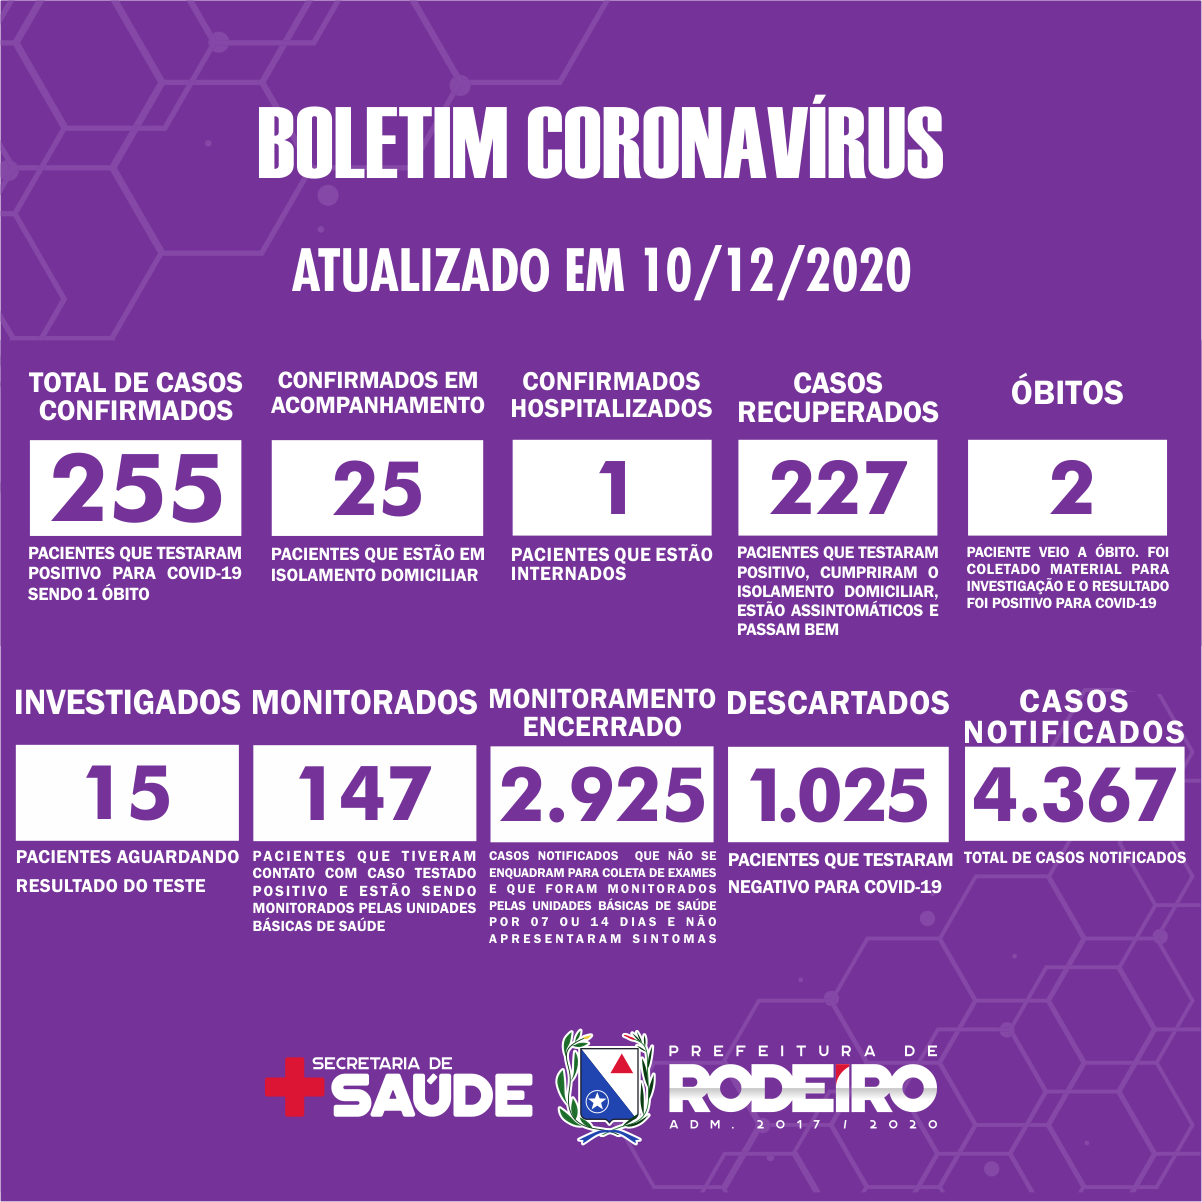 Boletim Epidemiológico do Município de Rodeiro sobre coronavírus, atualizado em 10/12/2020